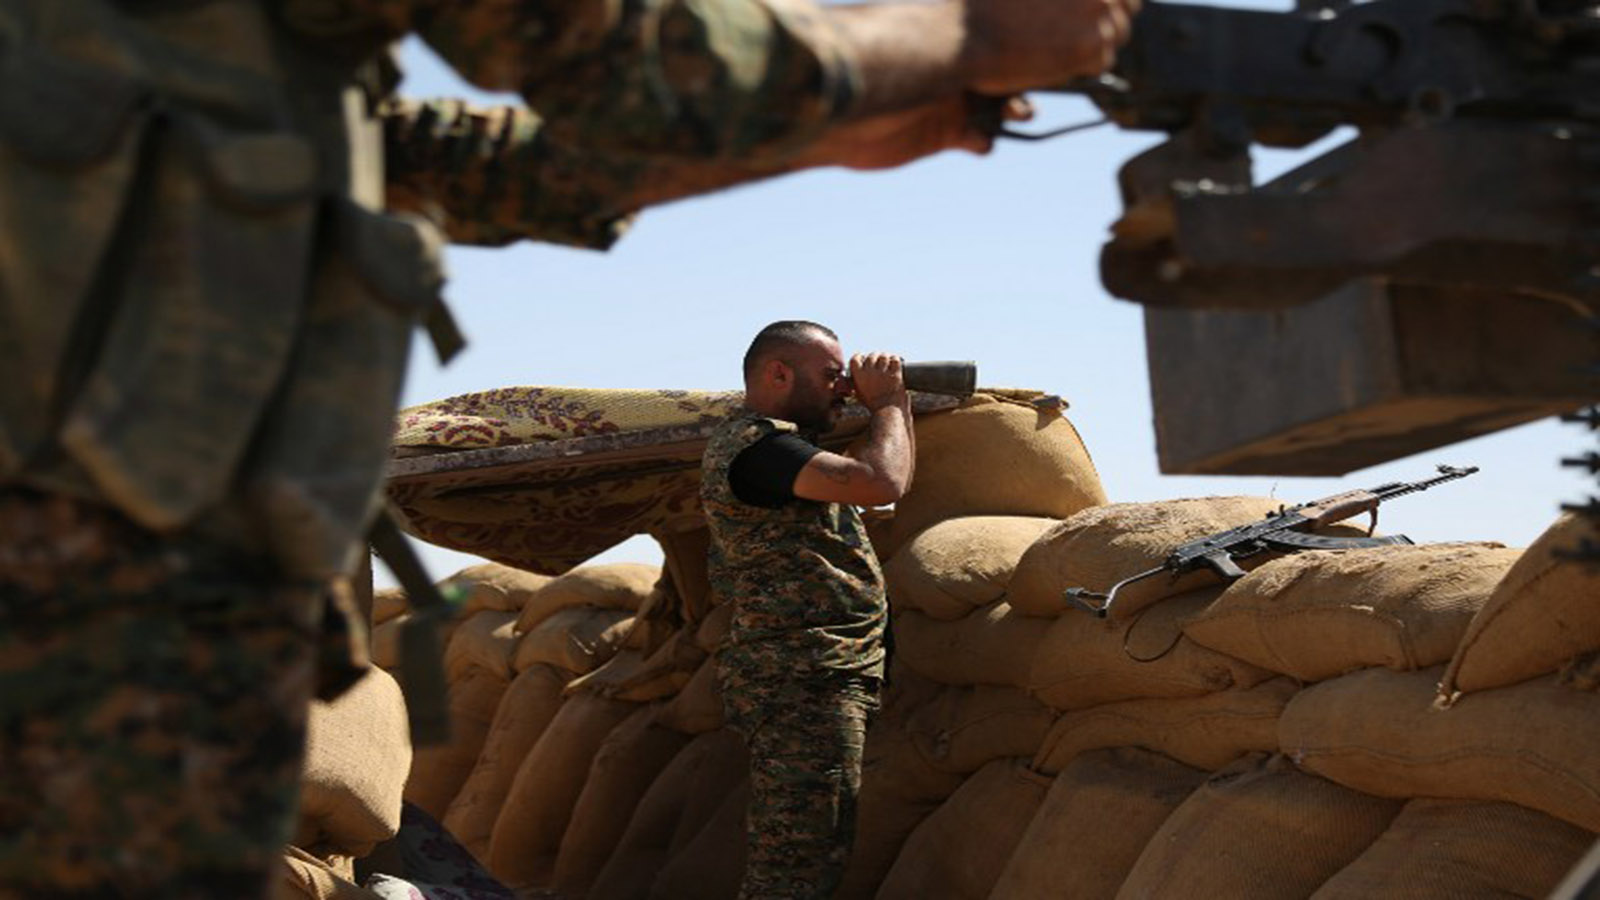 سوريا: "بيشمركة روج افا" ستقاتل داعش